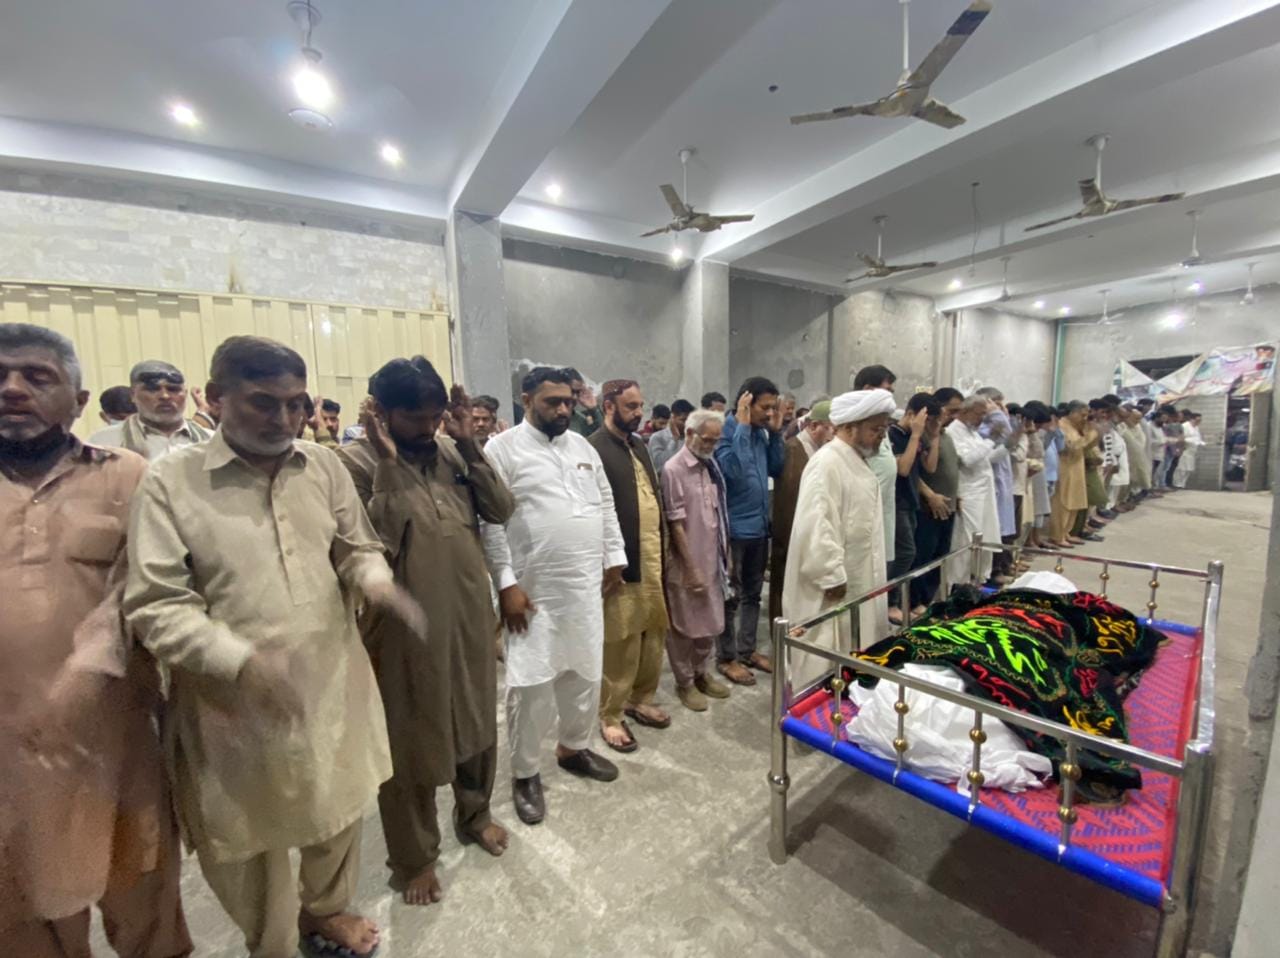 شہید عتیق رضا کی نمازہ جنازہ علامہ شبیر میثمی کی اقتداء میں ادا کردی گئی